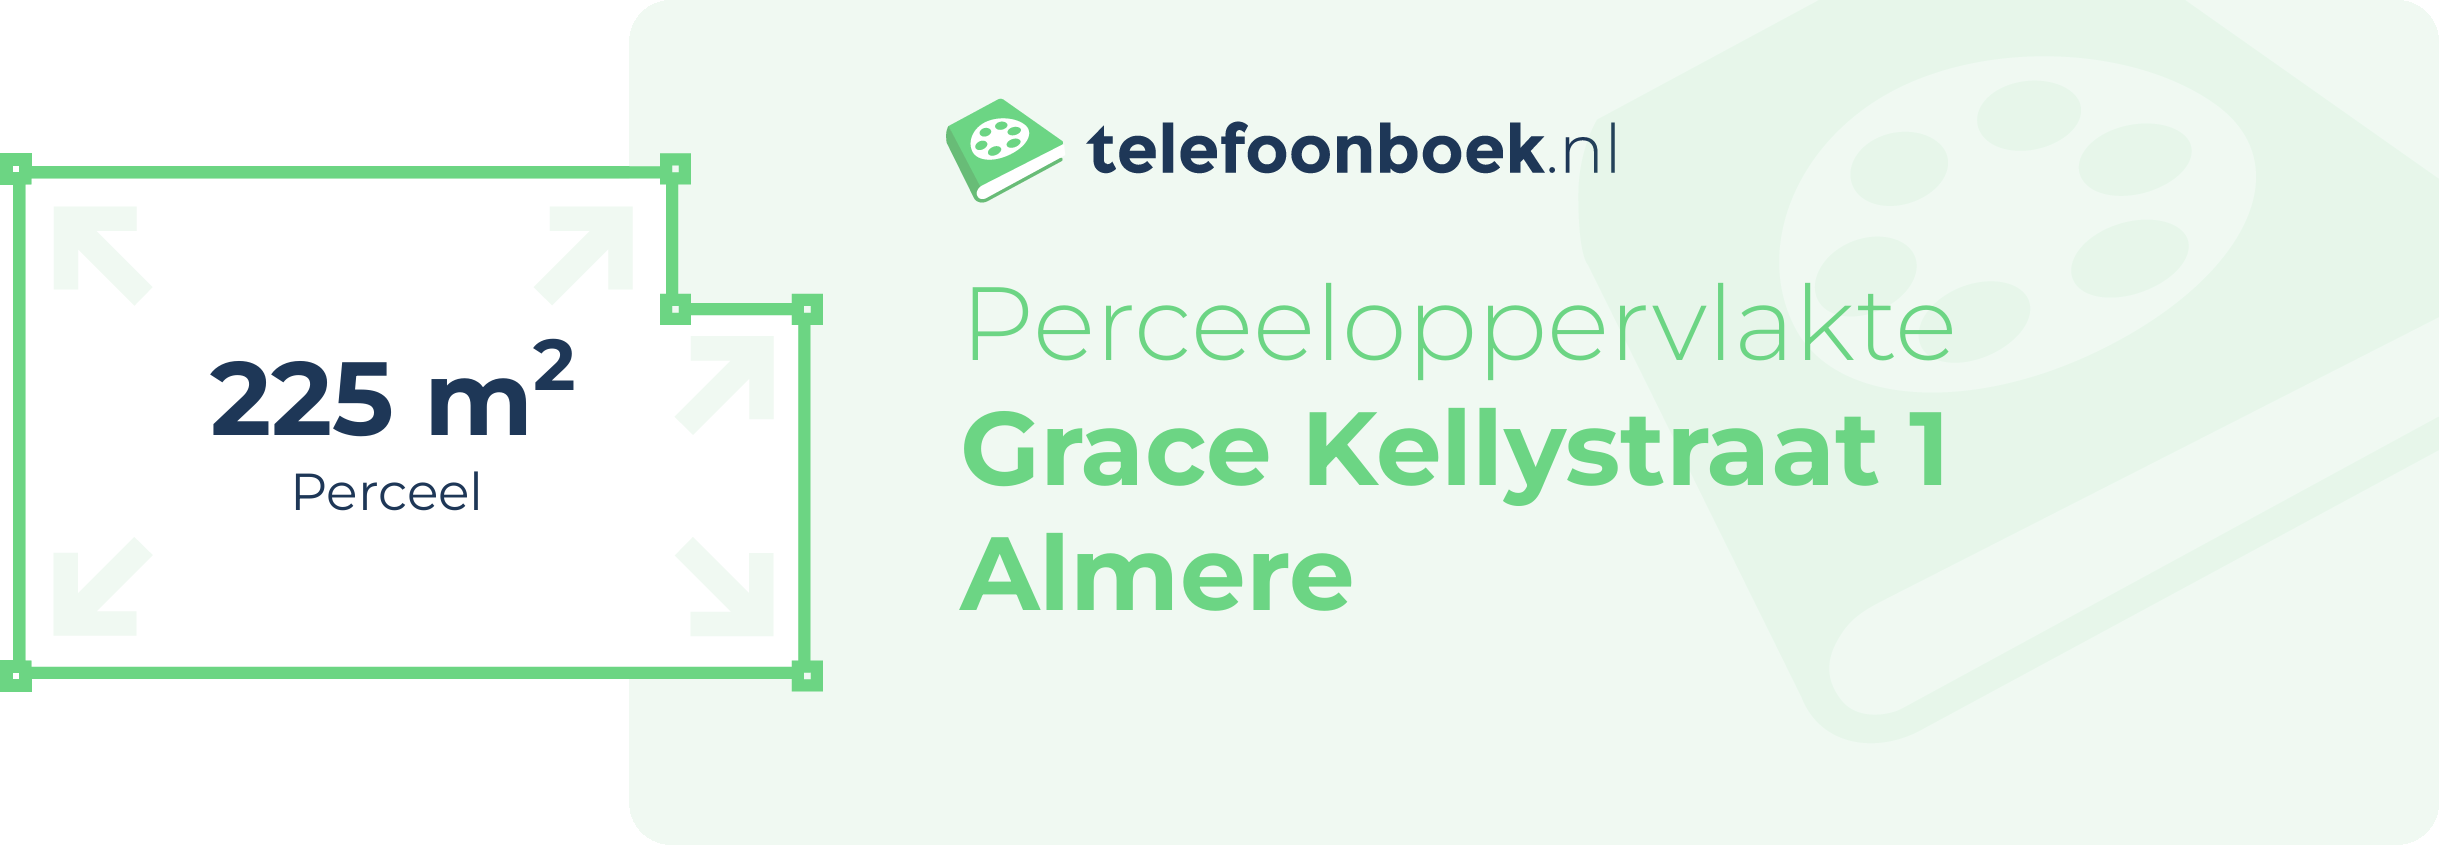 Perceeloppervlakte Grace Kellystraat 1 Almere